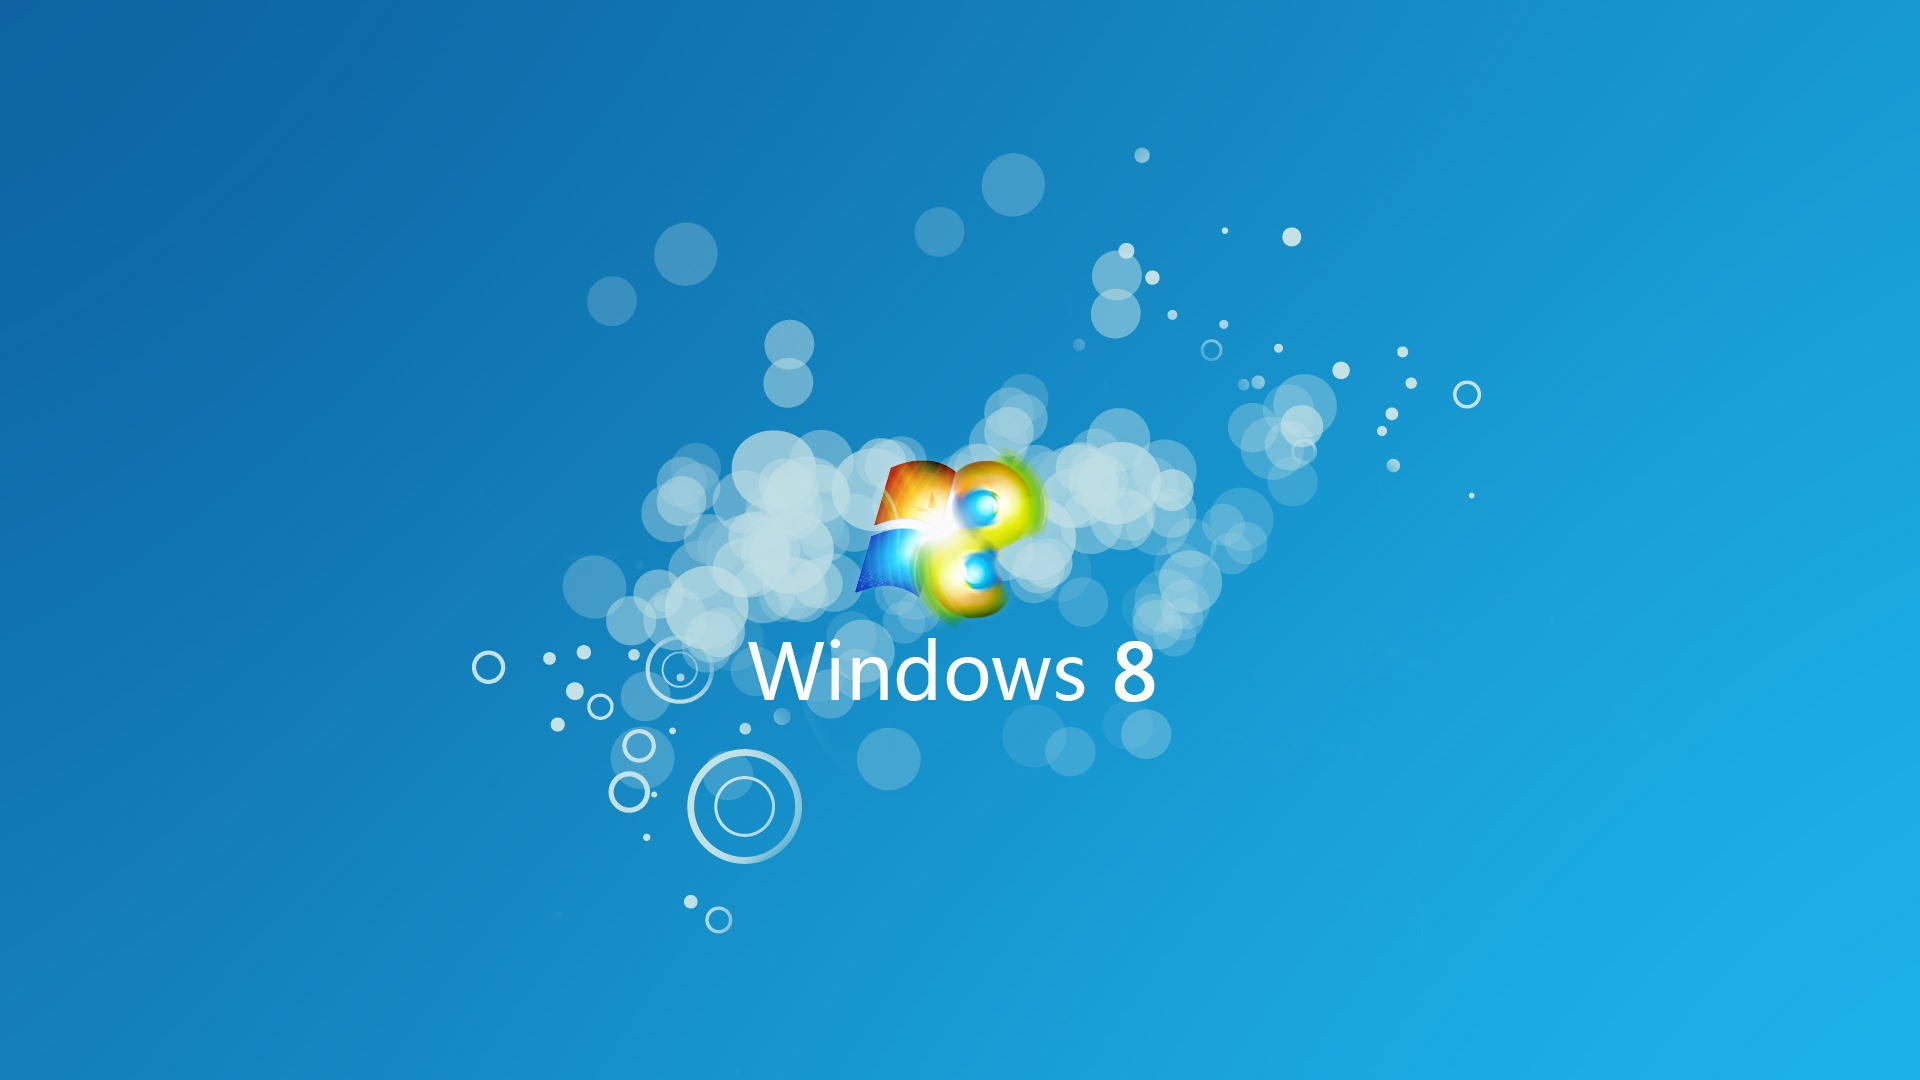 Windows 8 theme wallpaper (1) #9 - 1920x1080